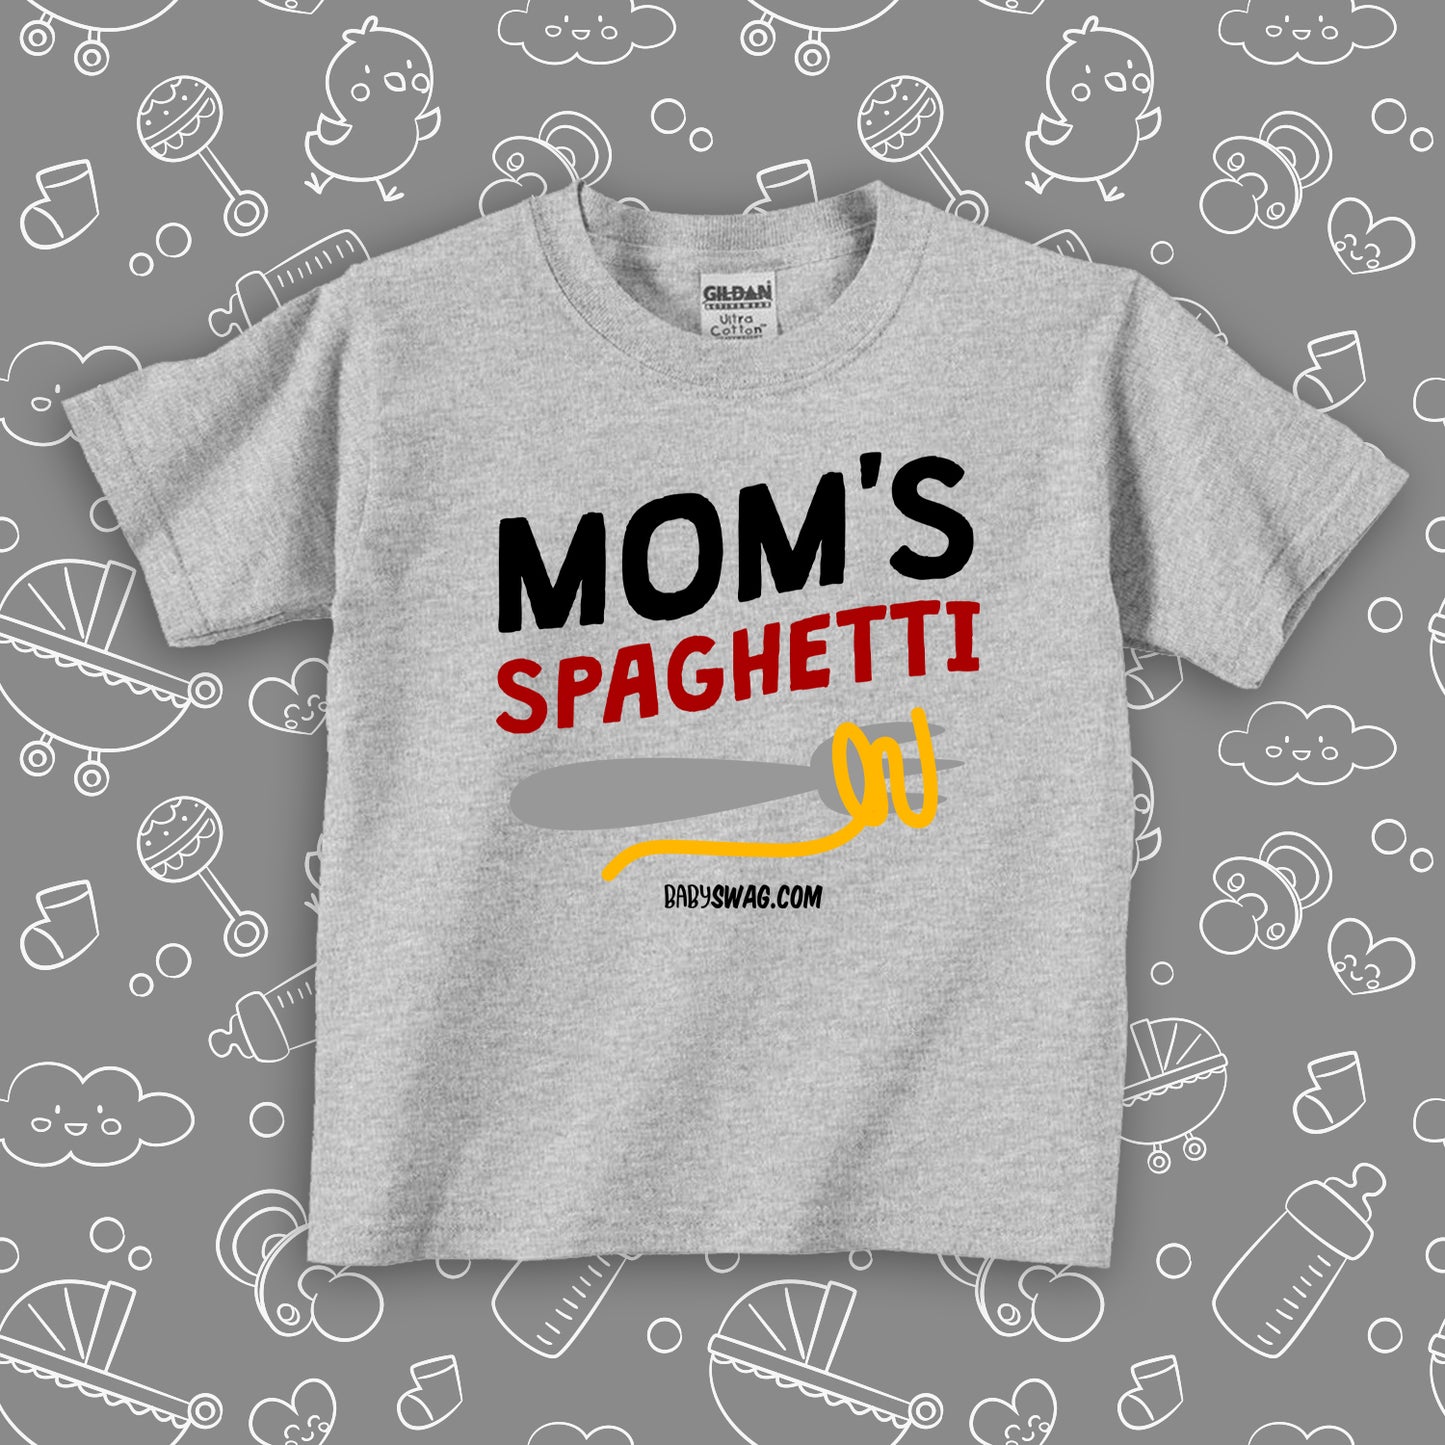 Mom's Spaghetti (T)